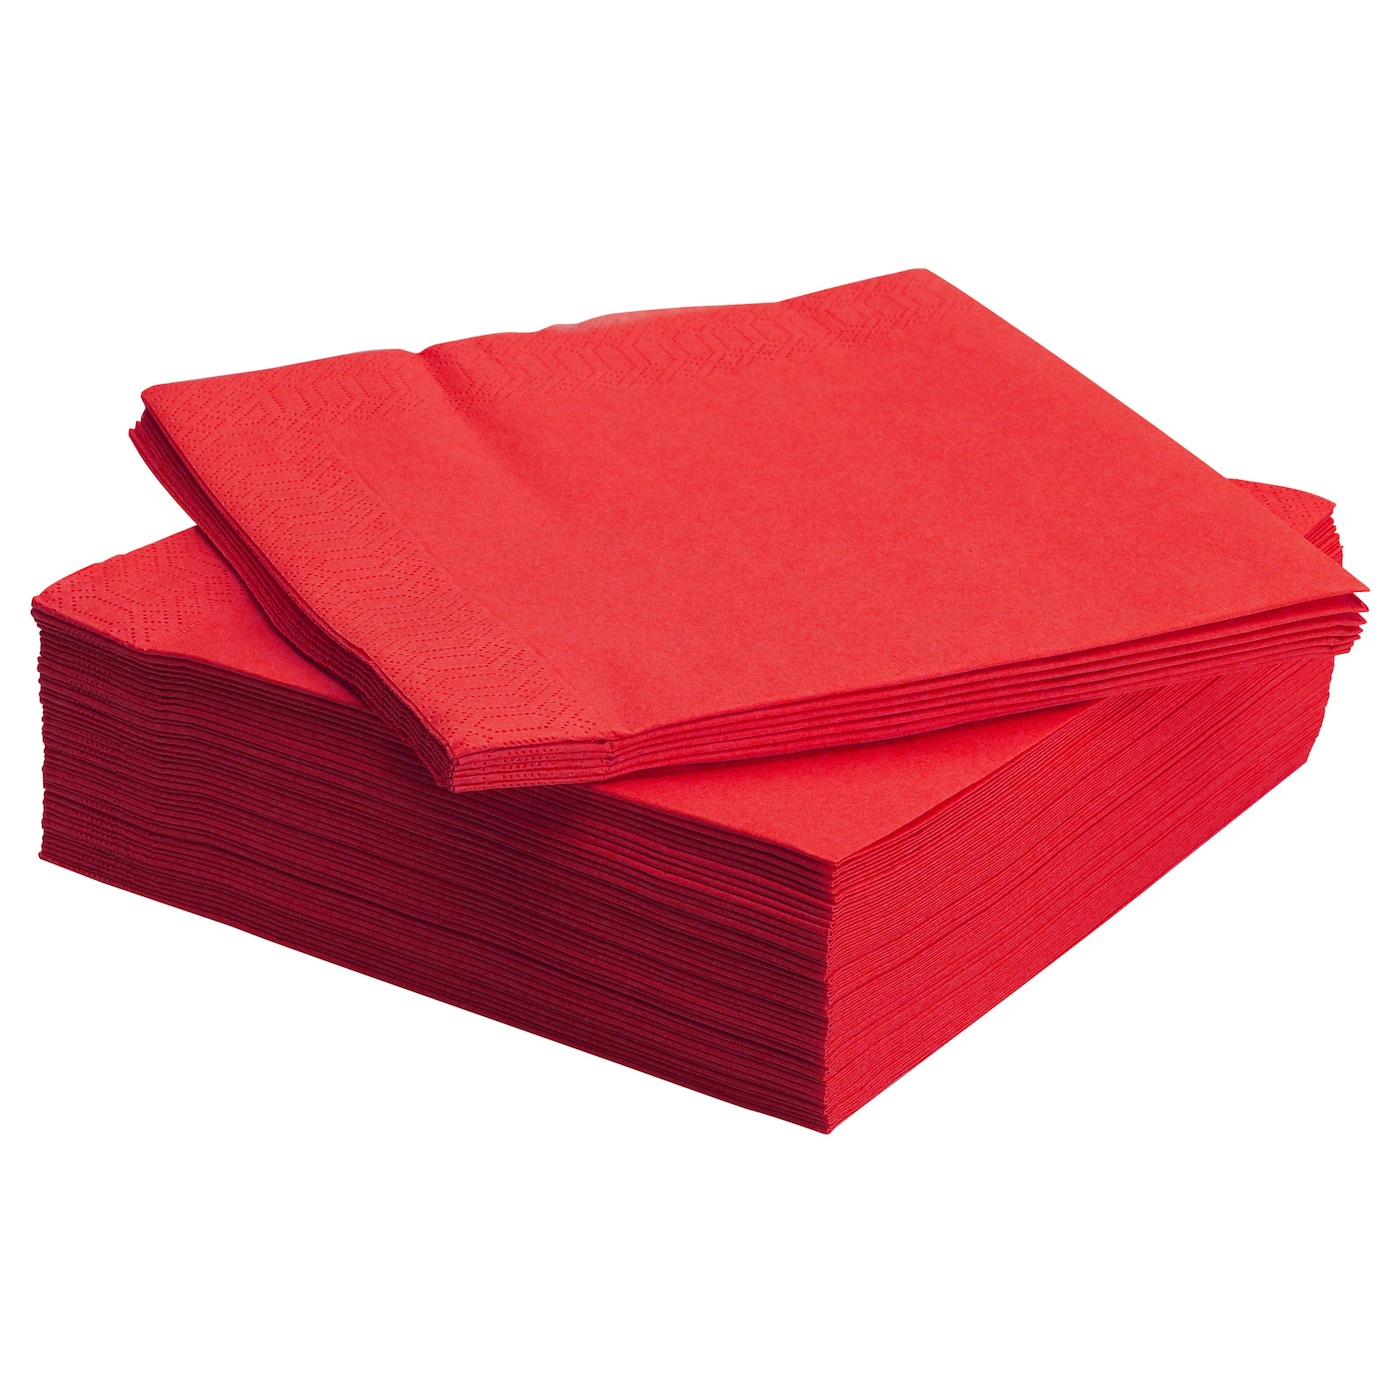 50 Serviettes Rouges Papiers Jetables 38 x 38 cm 2 Plis Pure Ouate /